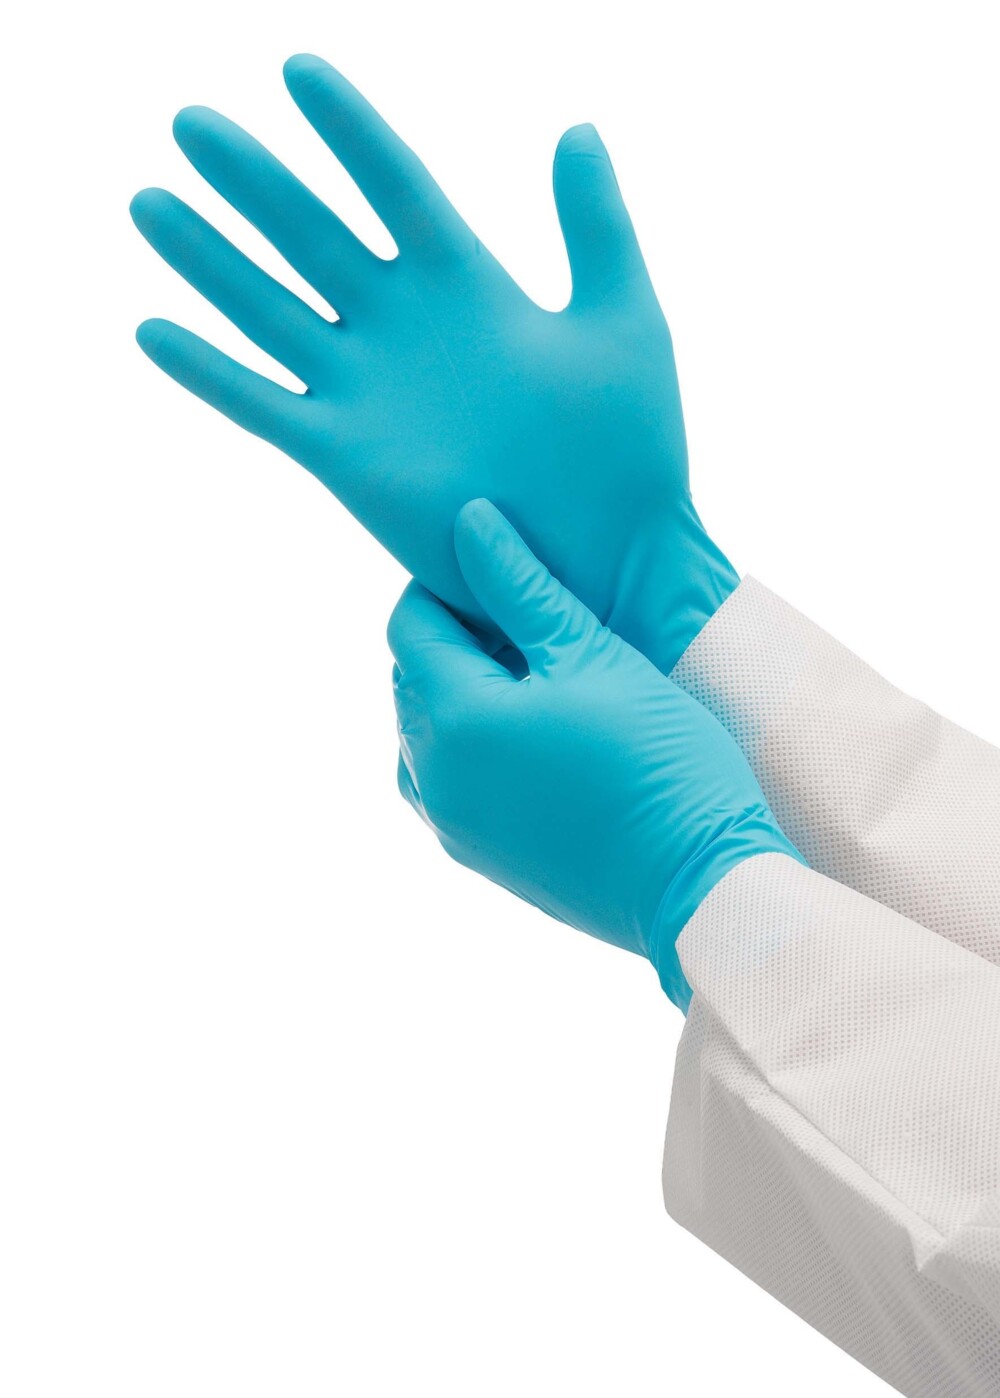 Gants ambidextres KleenGuard® G10 Nitrile 57370 - Bleu, XS, 10 x 100 (1 000 gants) - 57370